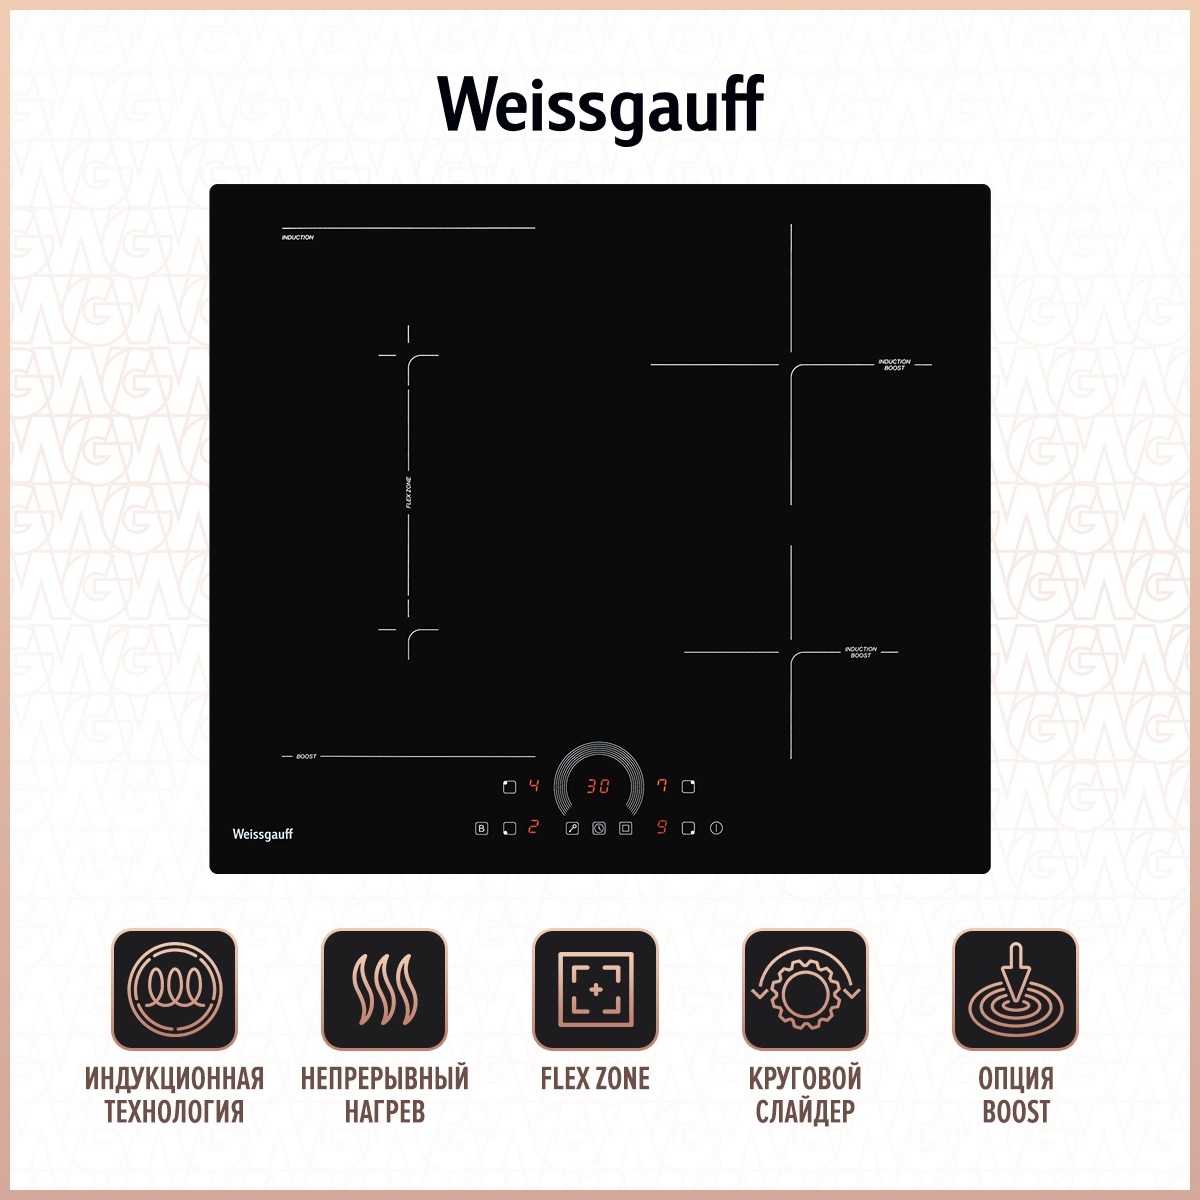 Встраиваемая варочная панель индукционная Weissgauff HI 643 BFZC черный встраиваемая варочная панель индукционная weissgauff hi 640 bscm premium